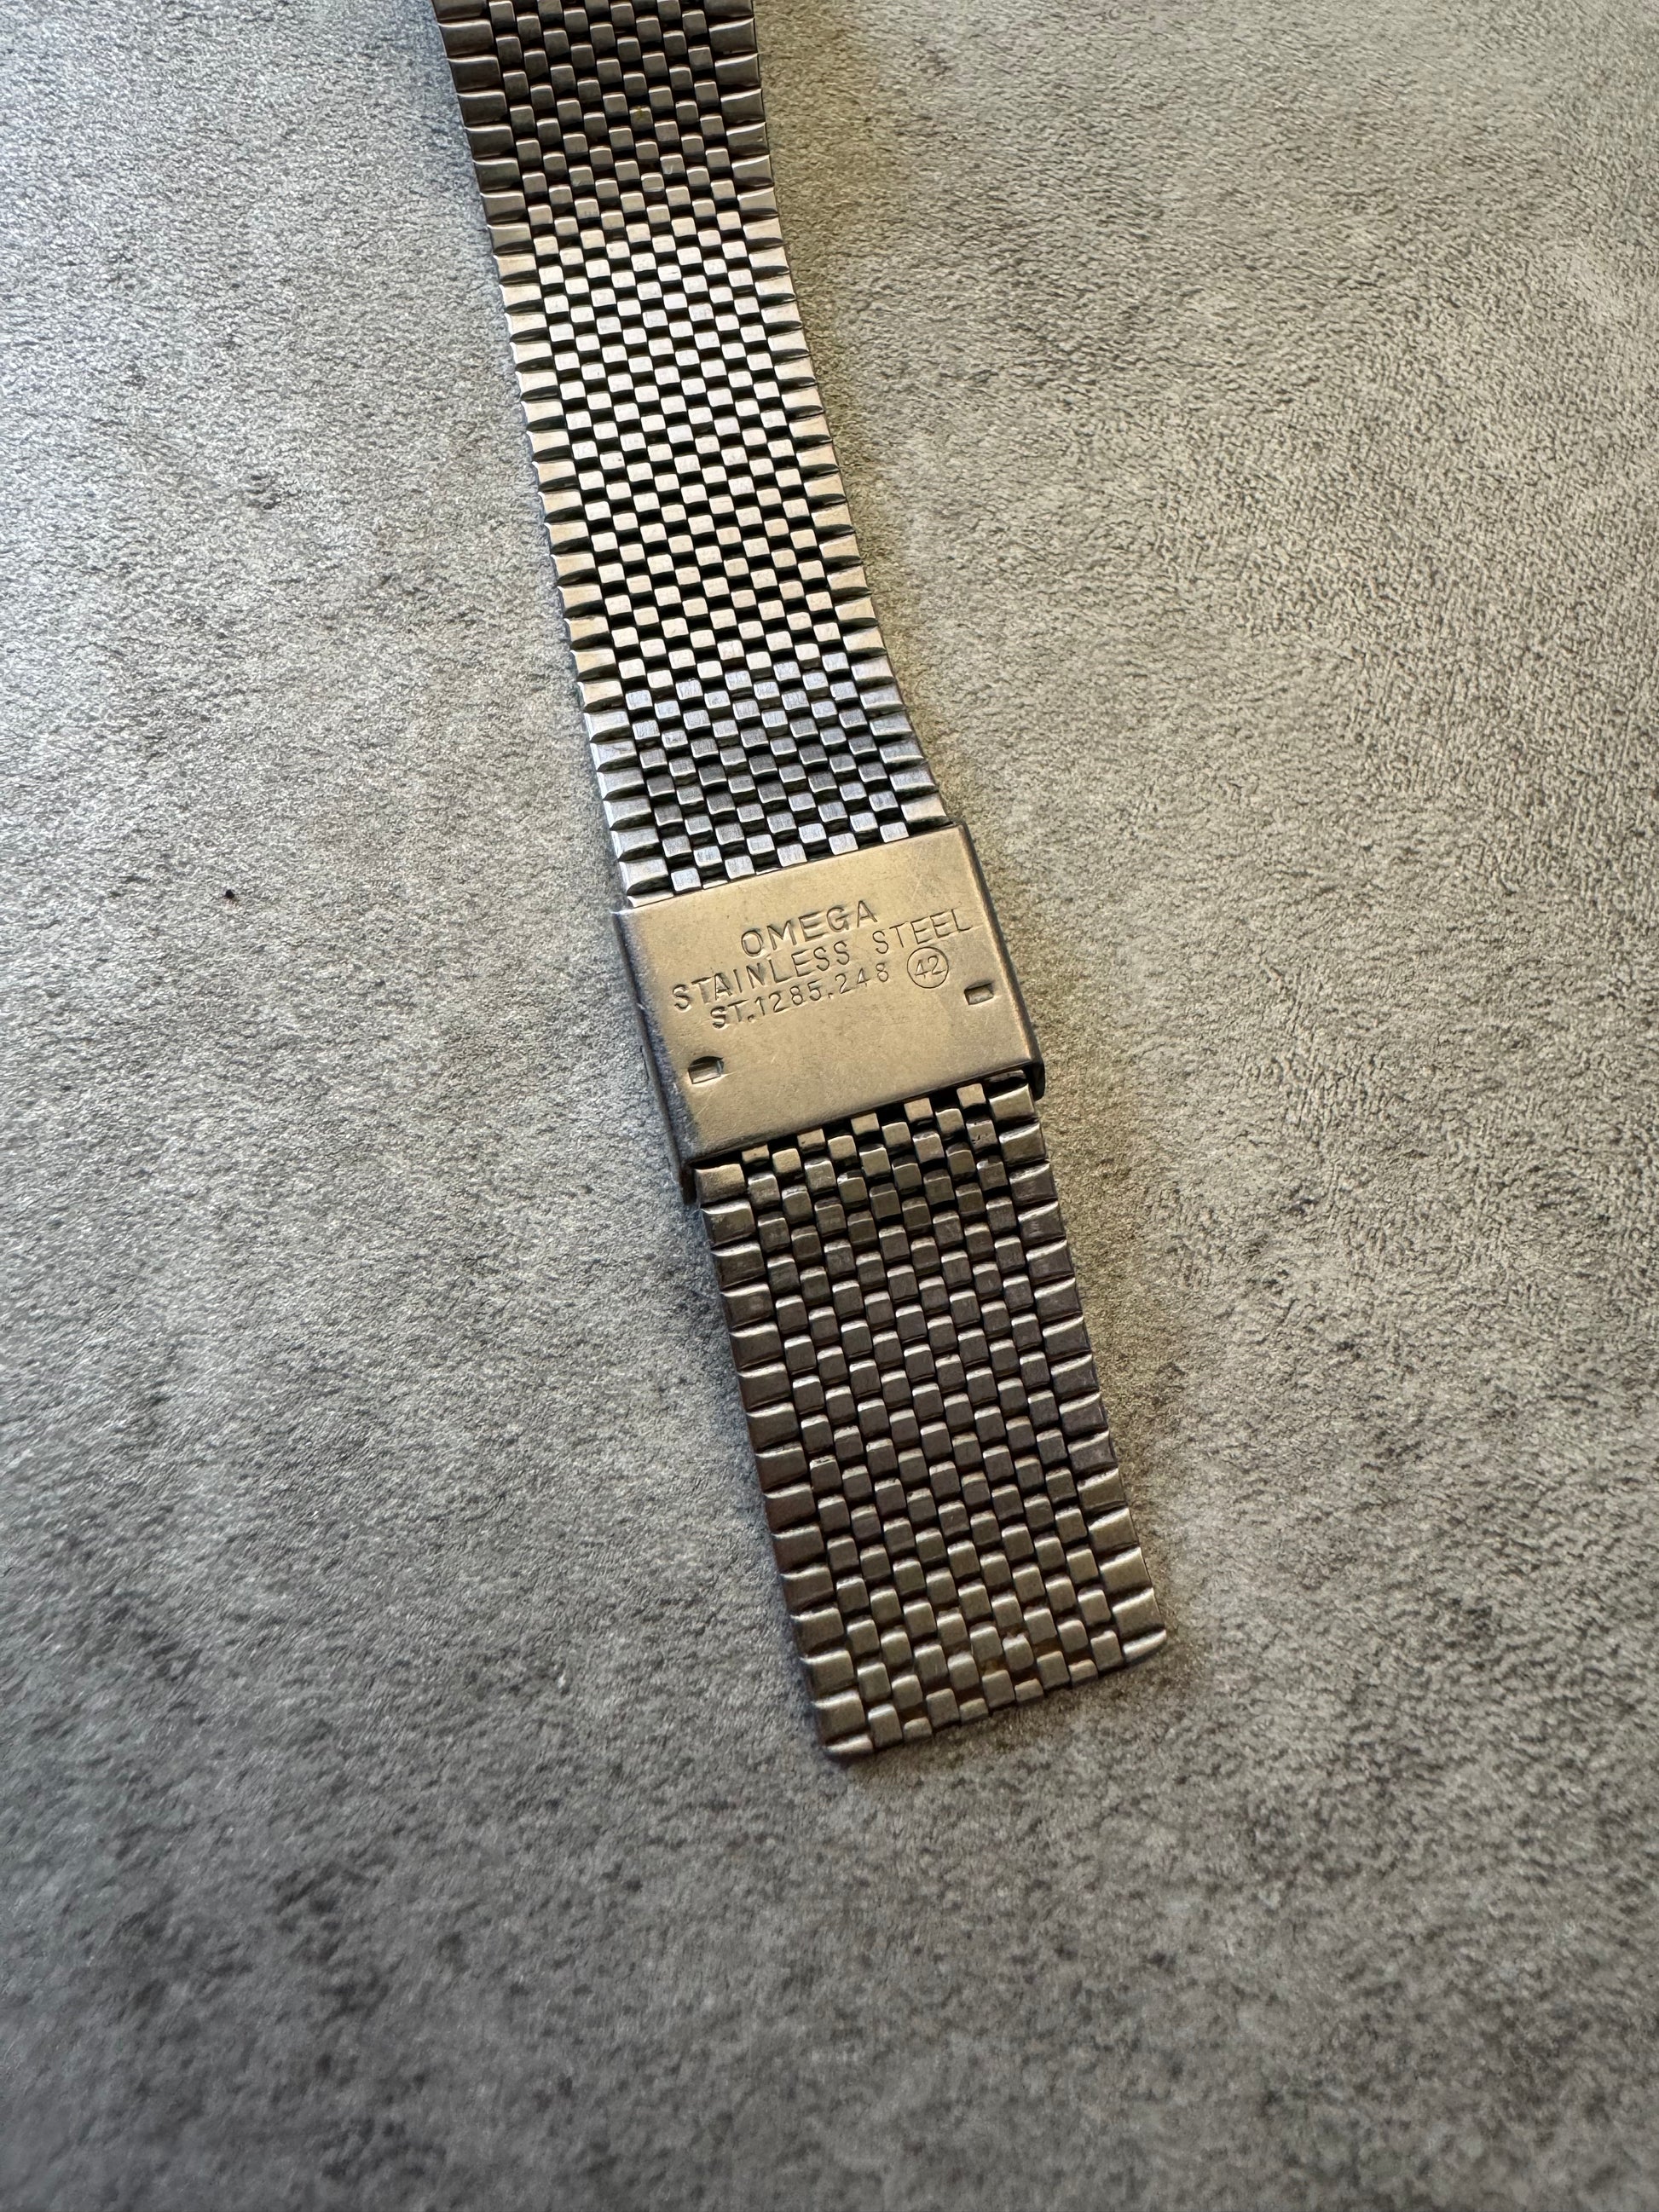 1970s Omega De Ville cal 1325 Silver Watch (OS) - 4